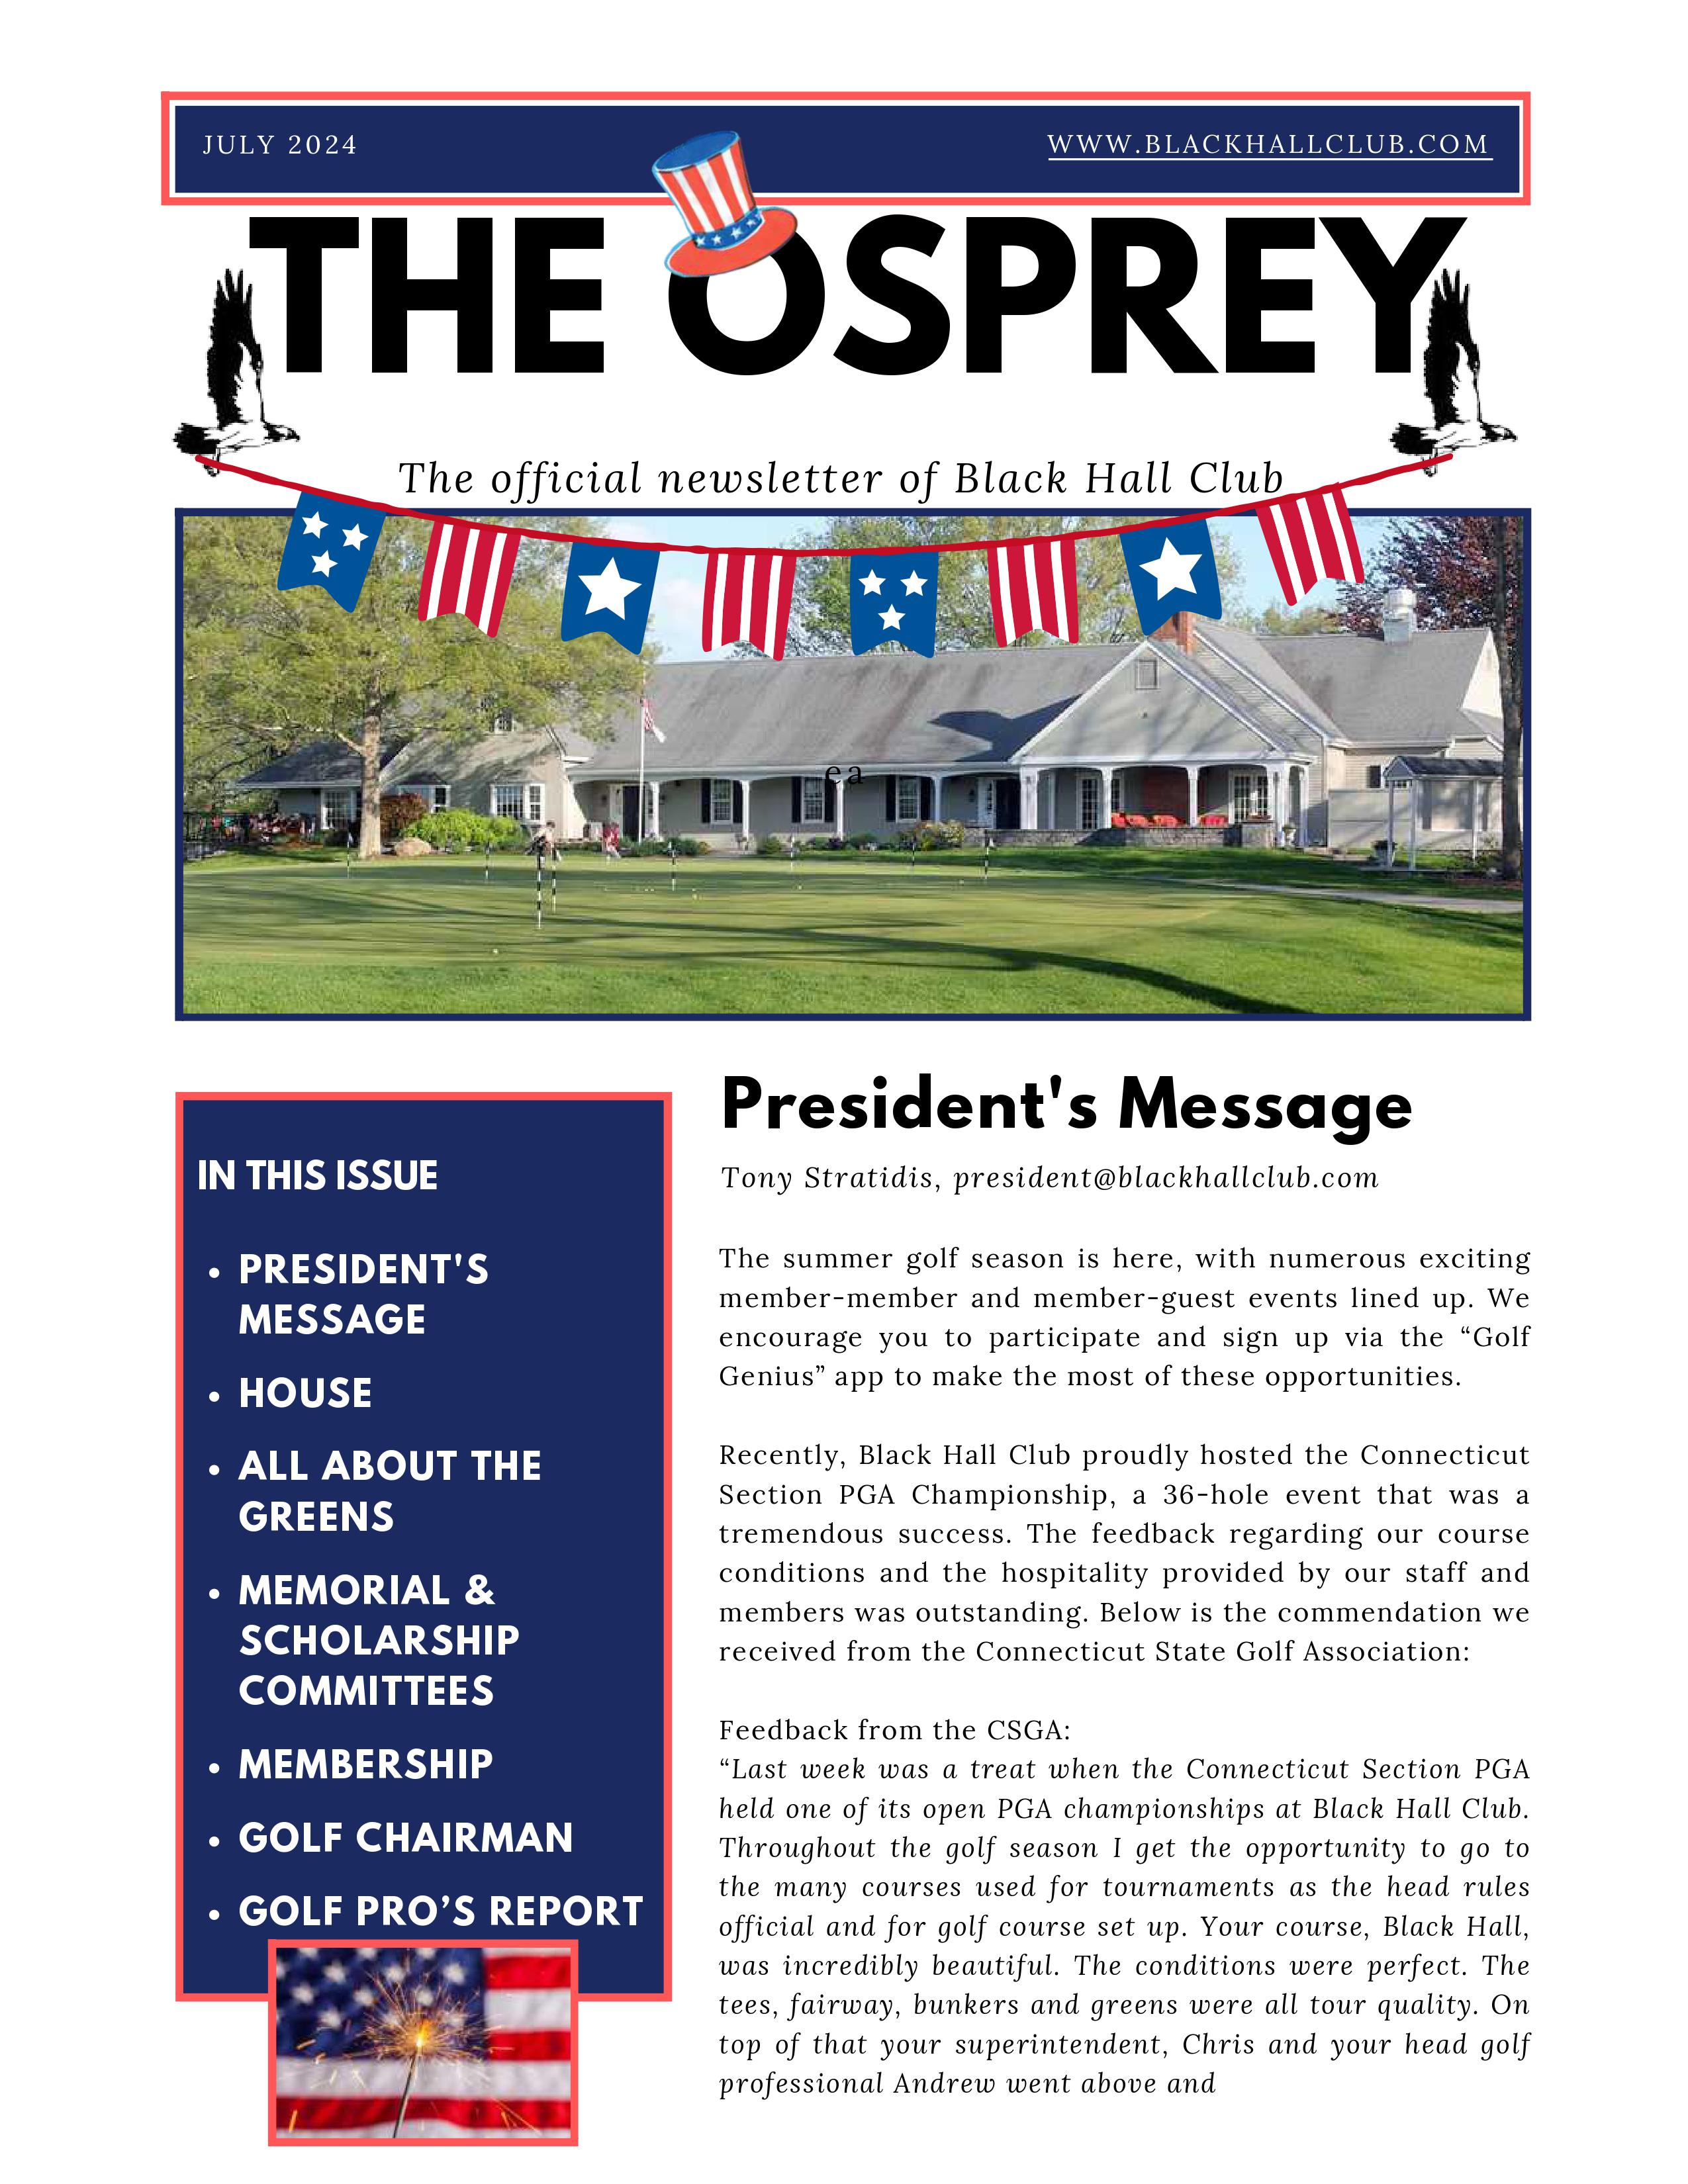 Osprey Newsletter July 2024 FINAL 1 images 0